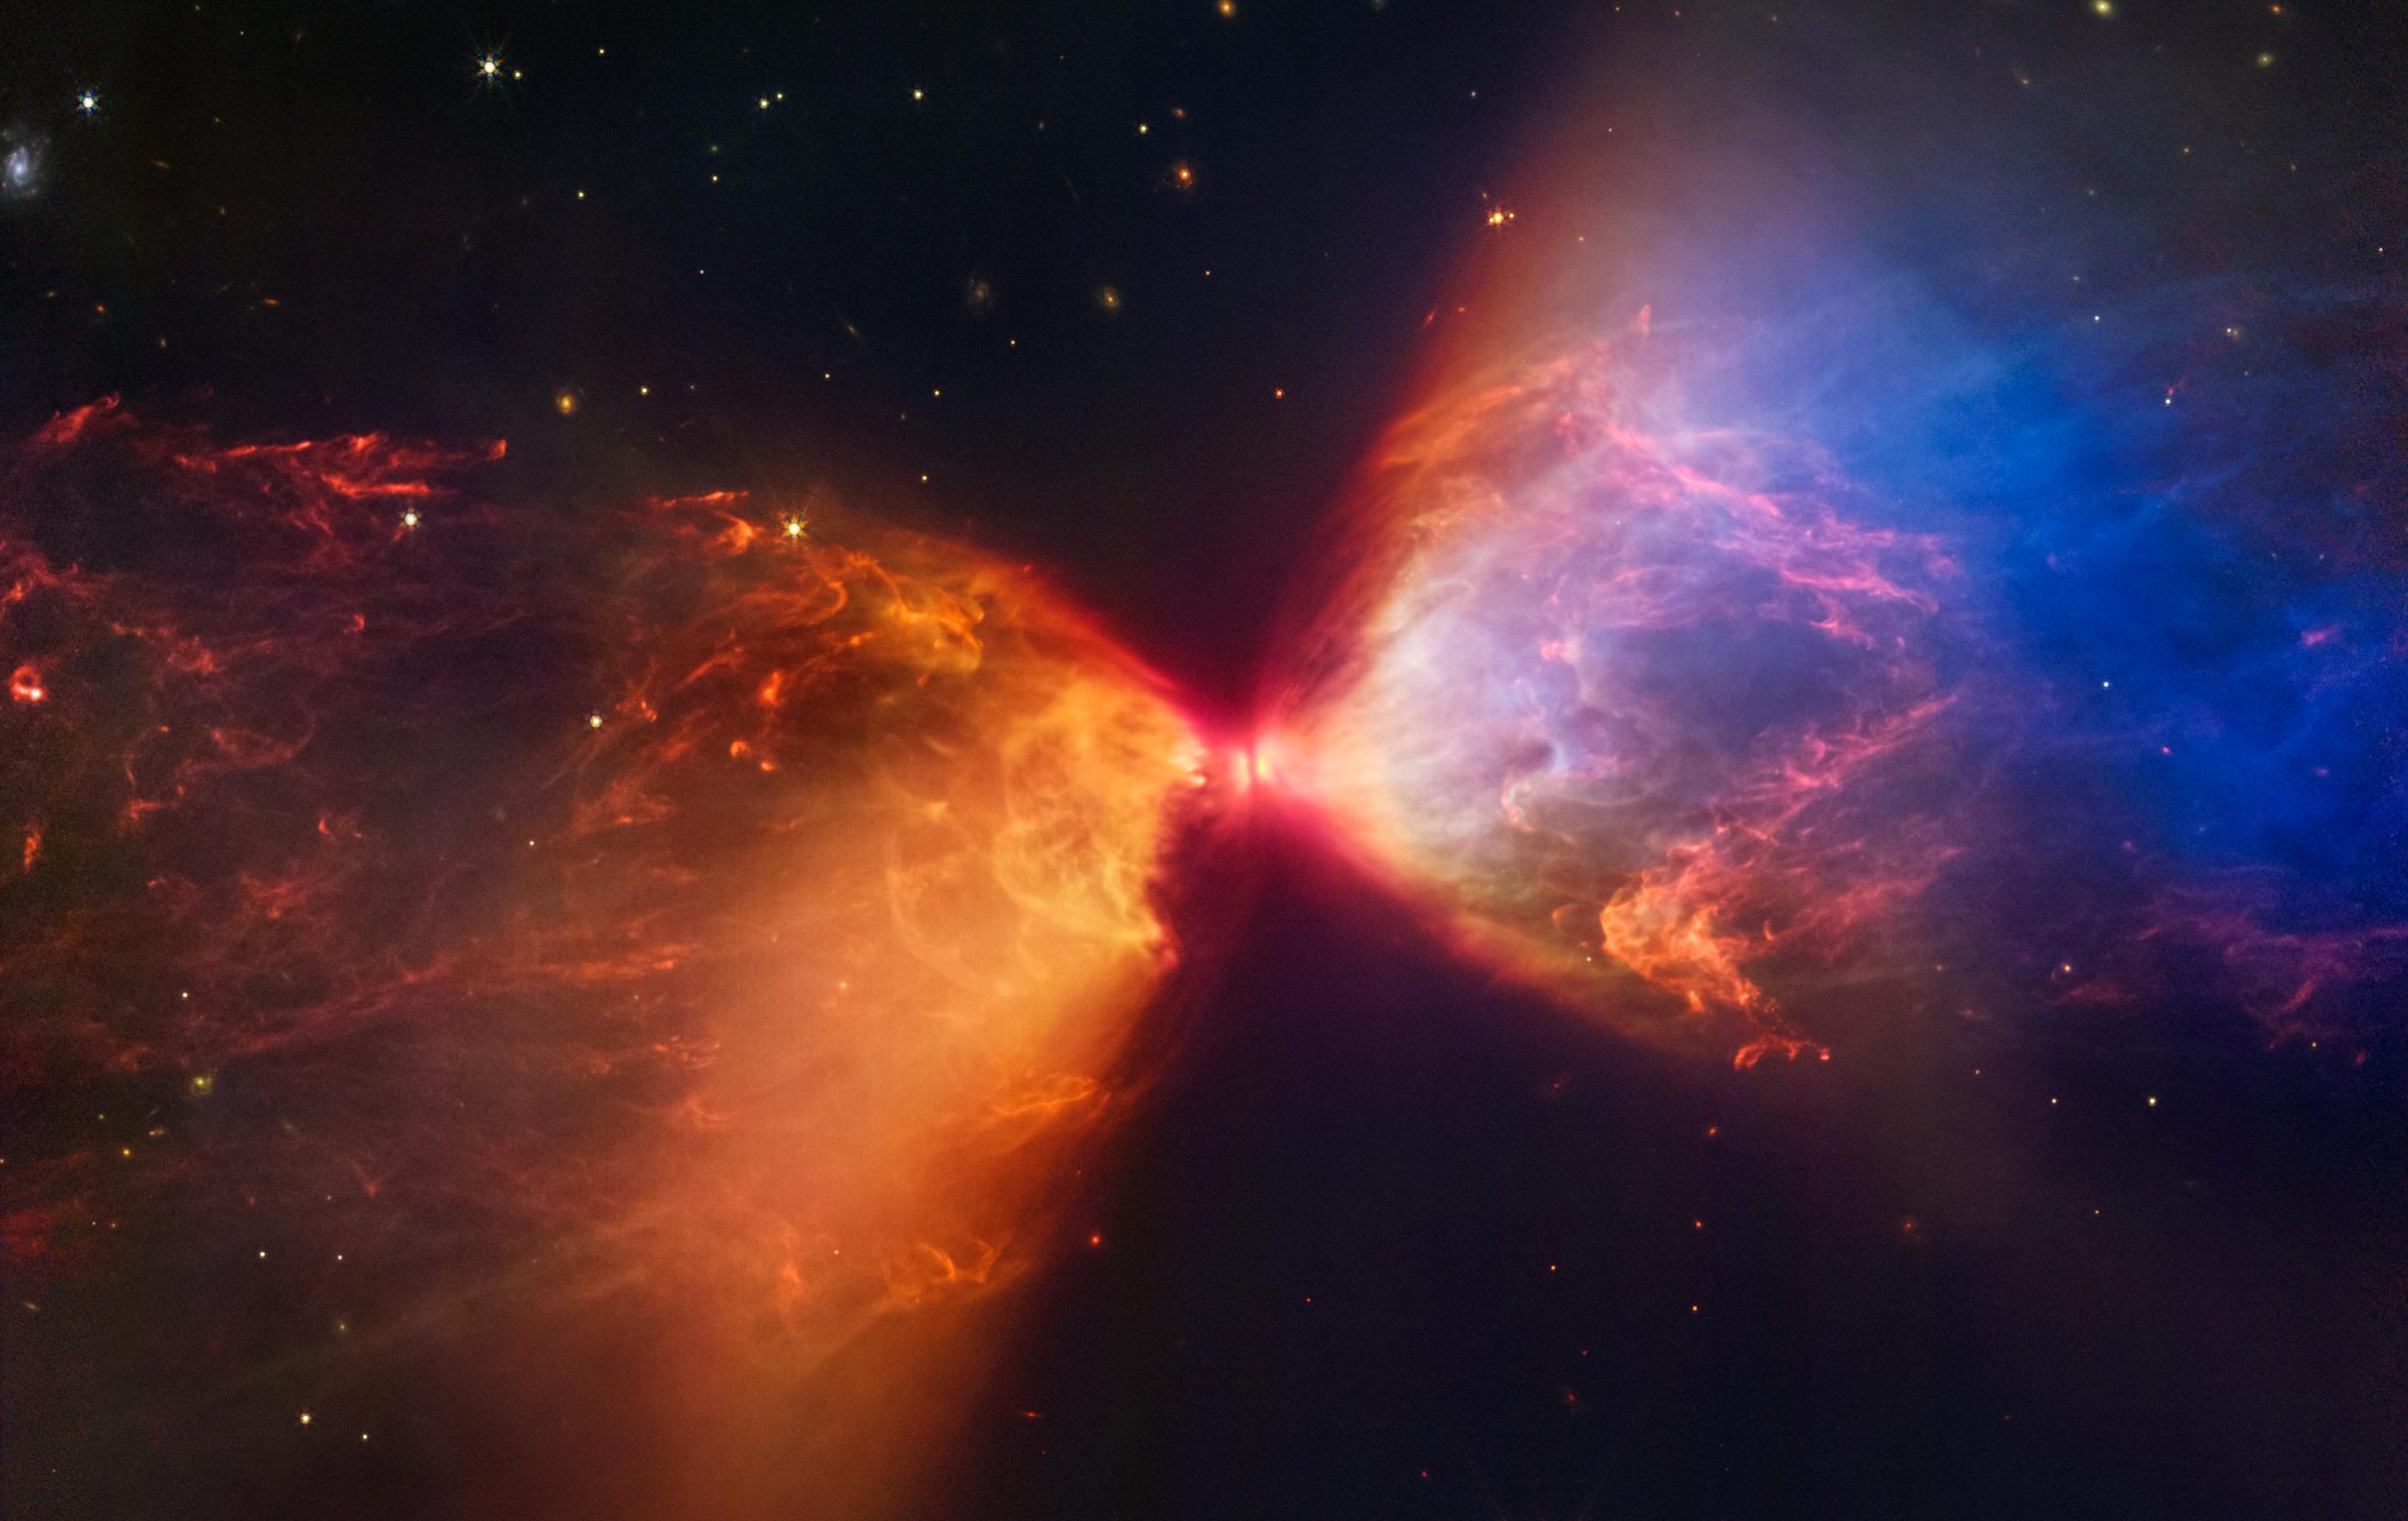 Telescopio espacial Webb captura características previamente ocultas de una protoestrella